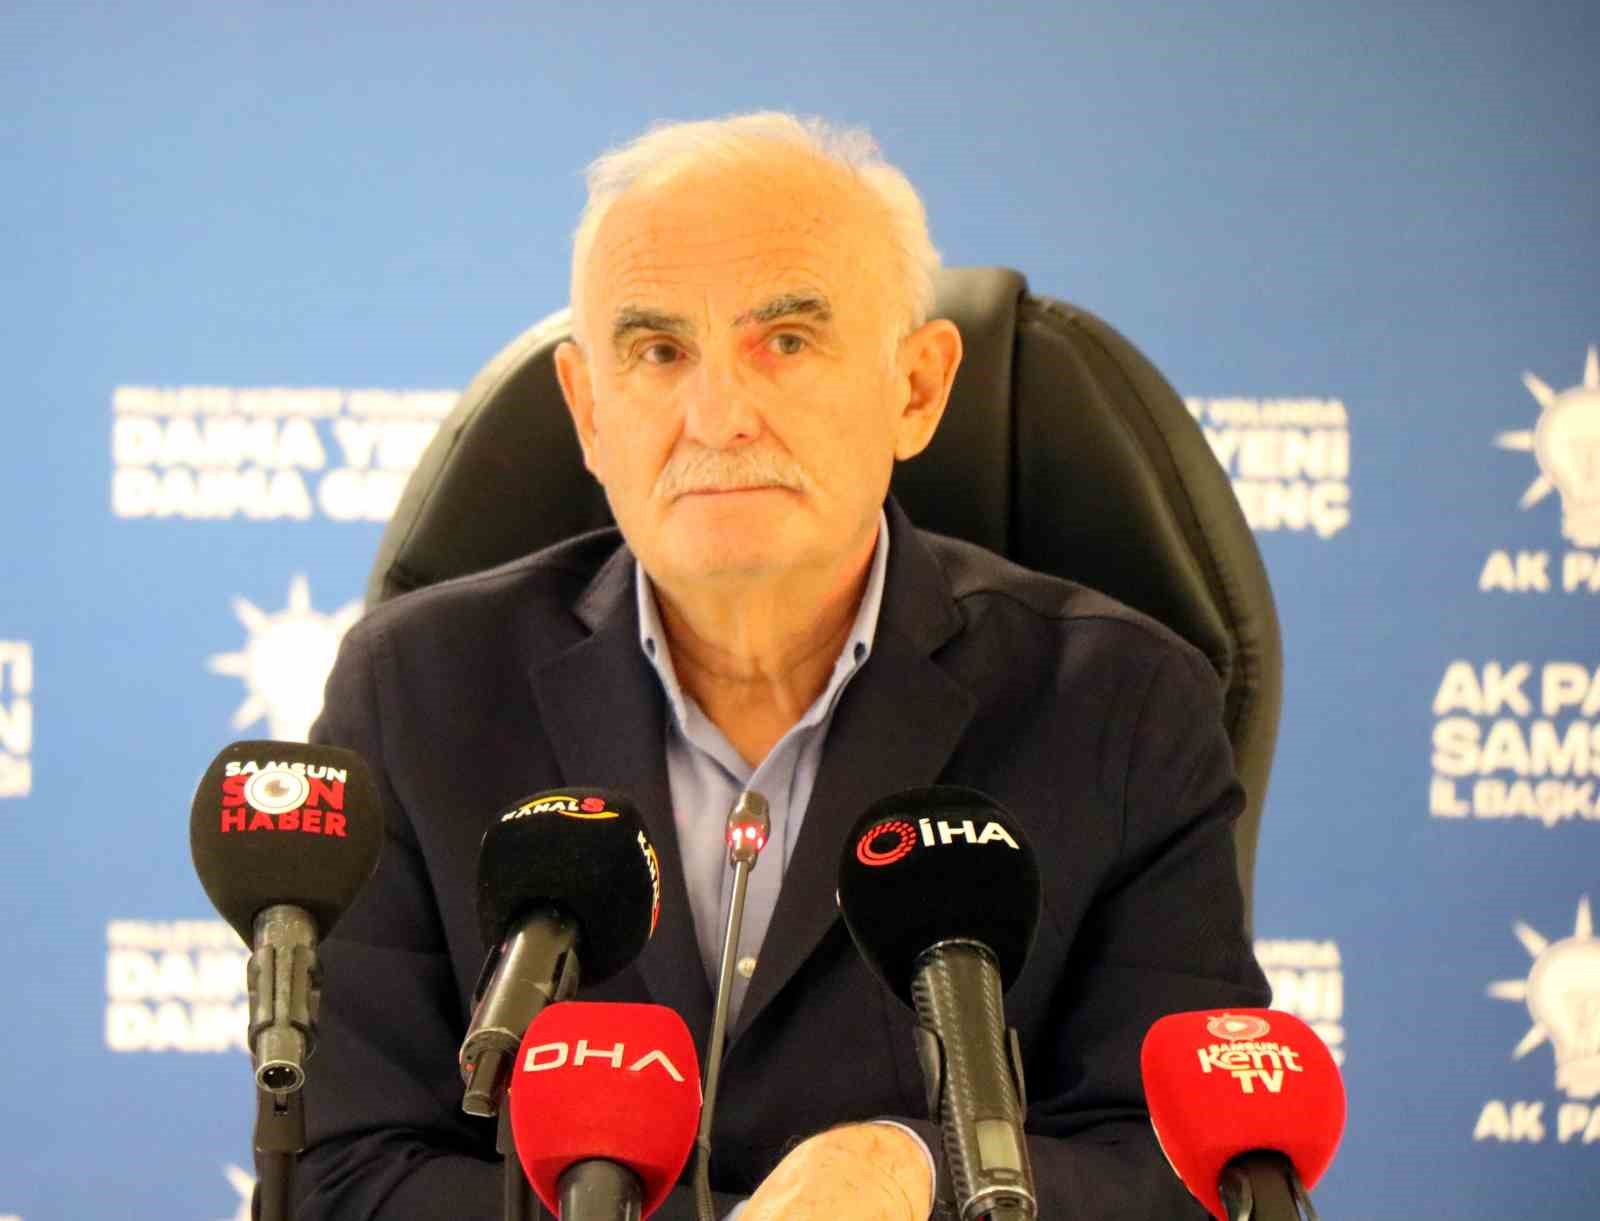 AK Parti Genel Başkan Yardımcısı Yılmaz: “Yerel seçimlerde de 3 dönem kuralı uygulanacak”